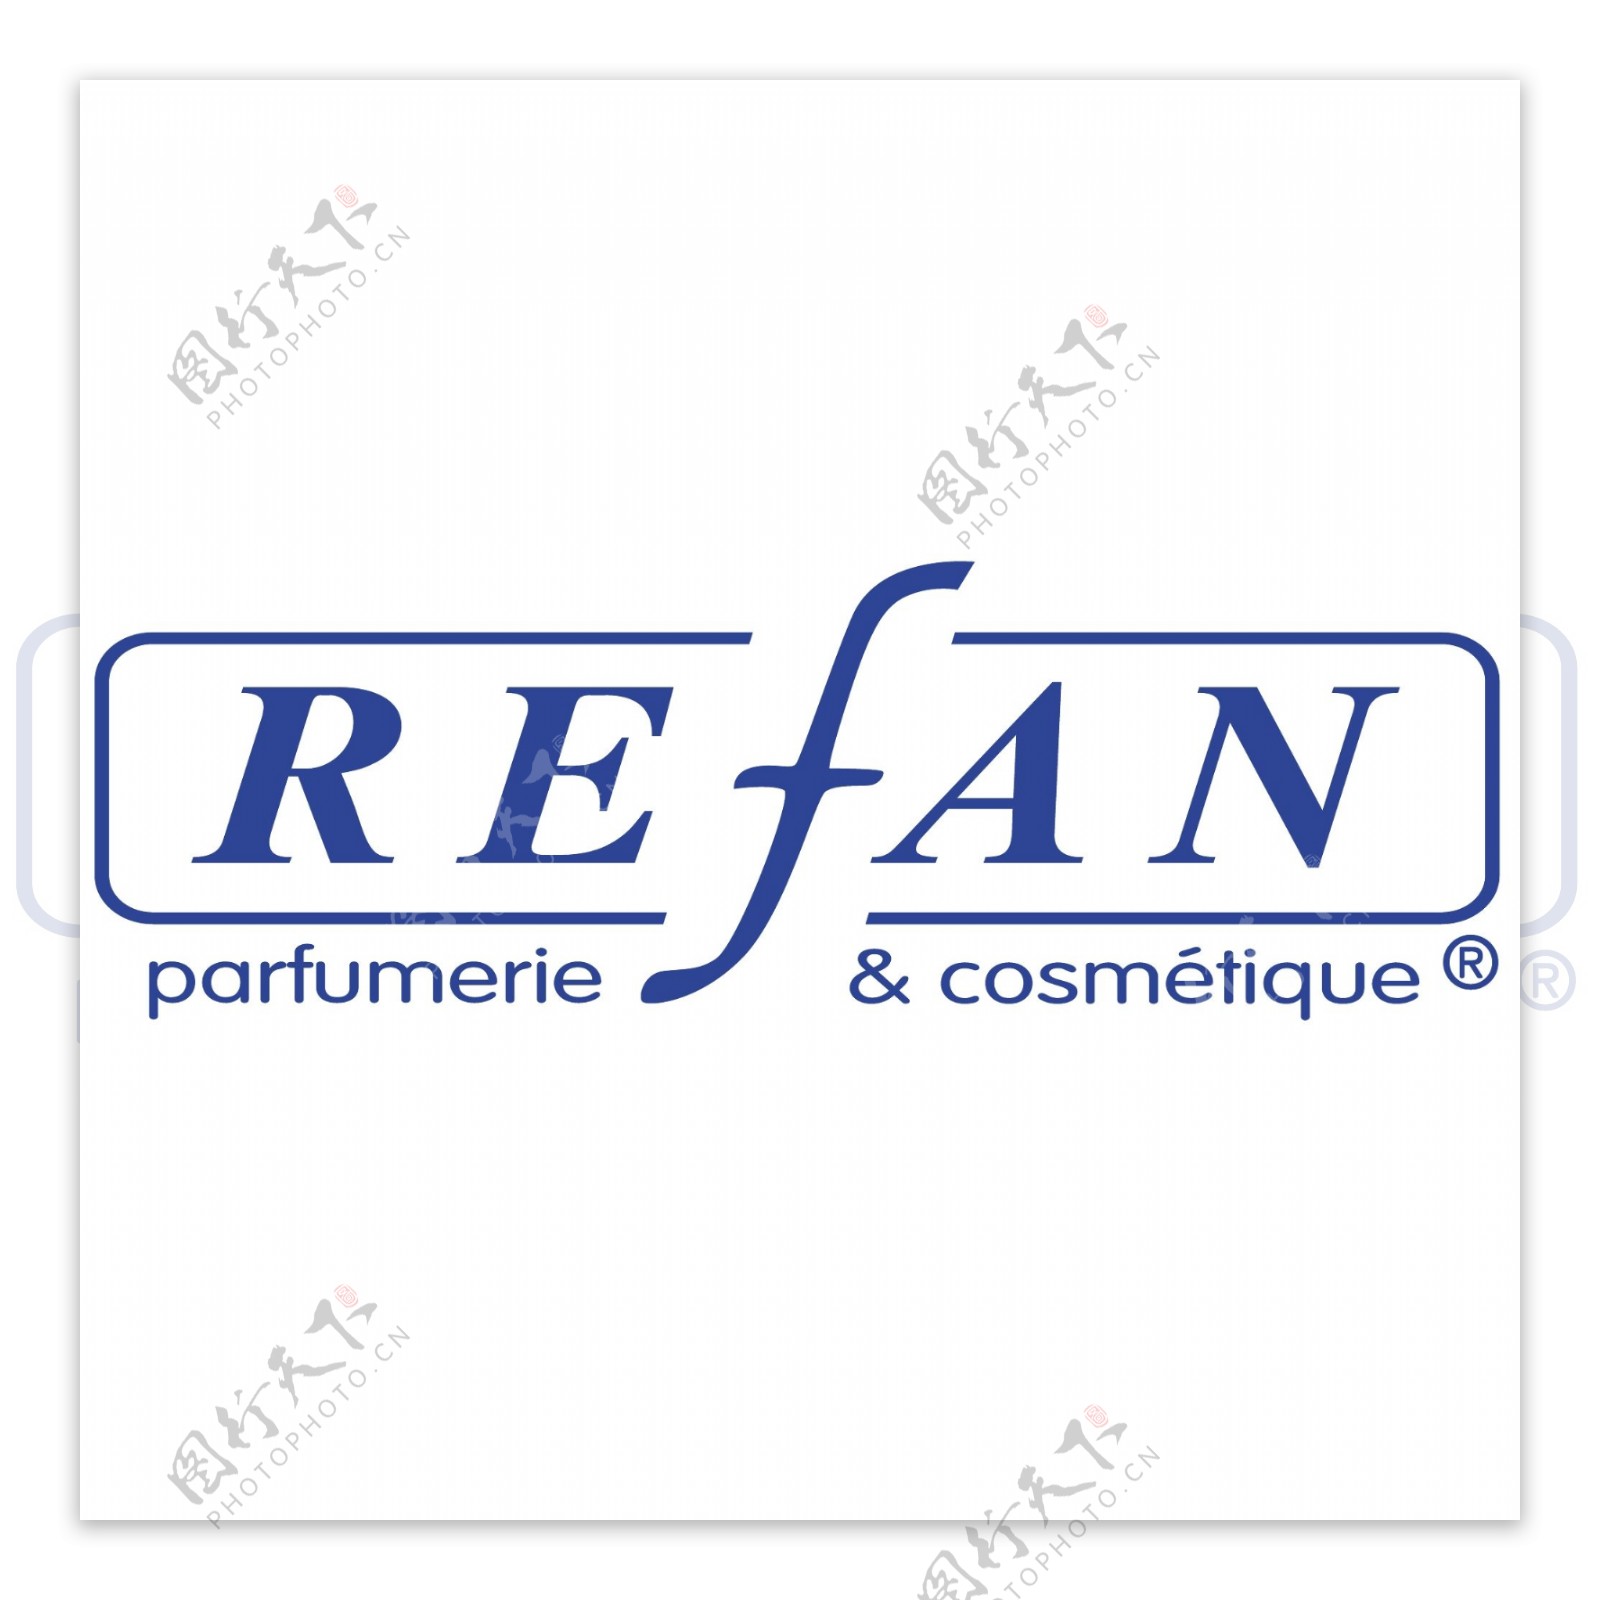 RefanLtdlogo设计欣赏RefanLtd洗护品标志下载标志设计欣赏